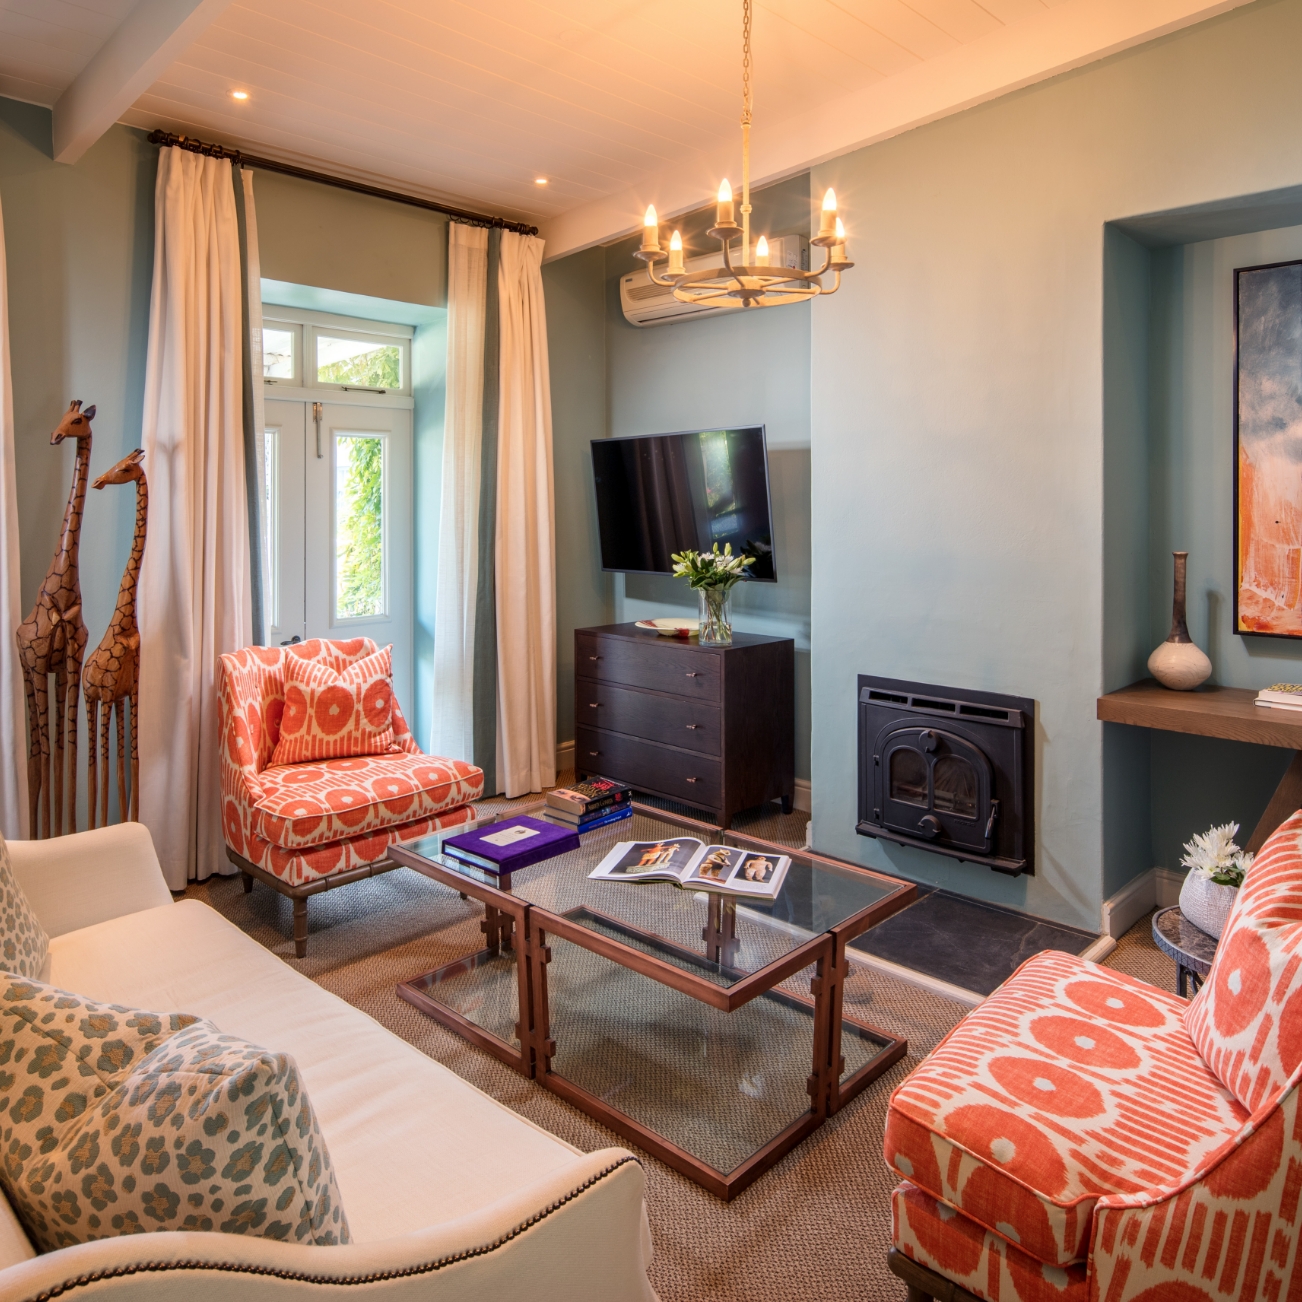 Leeucollection blog - 5 Ways to Enjoy a Suite Stay at Le Quartier Français 3